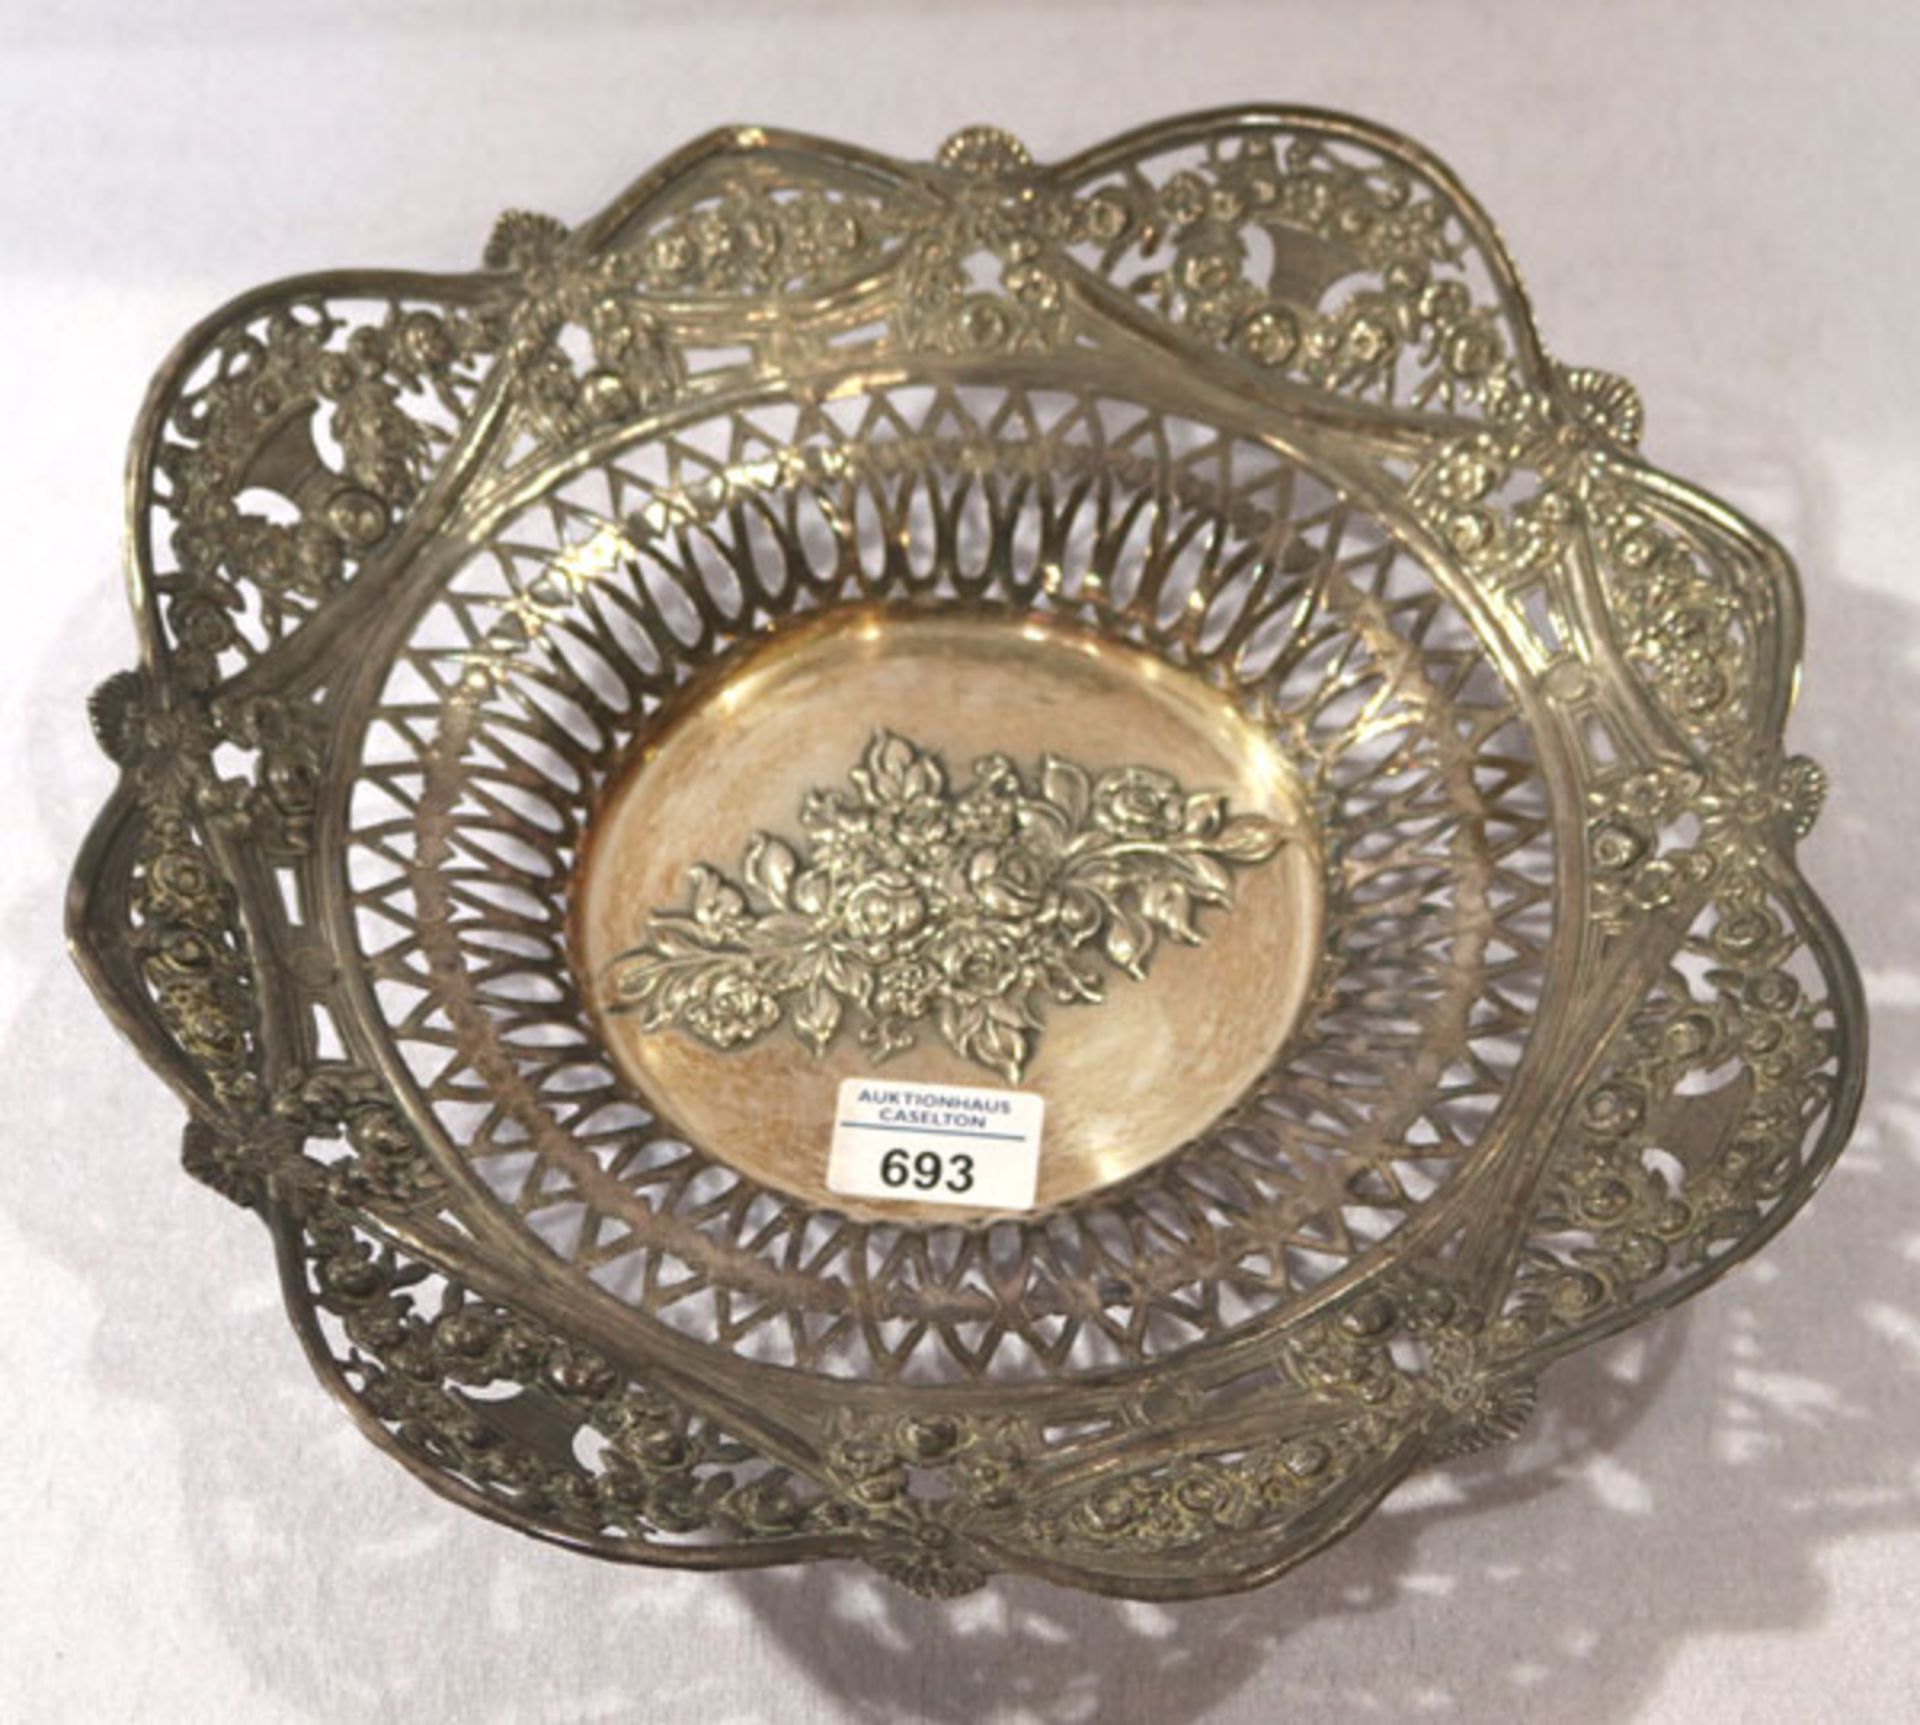 Schale mit Durchbruchrand und Reliefdekor, 835 Silber, 724 gr., H 6 cm, D 32,5 cm, Gebrauchsspuren